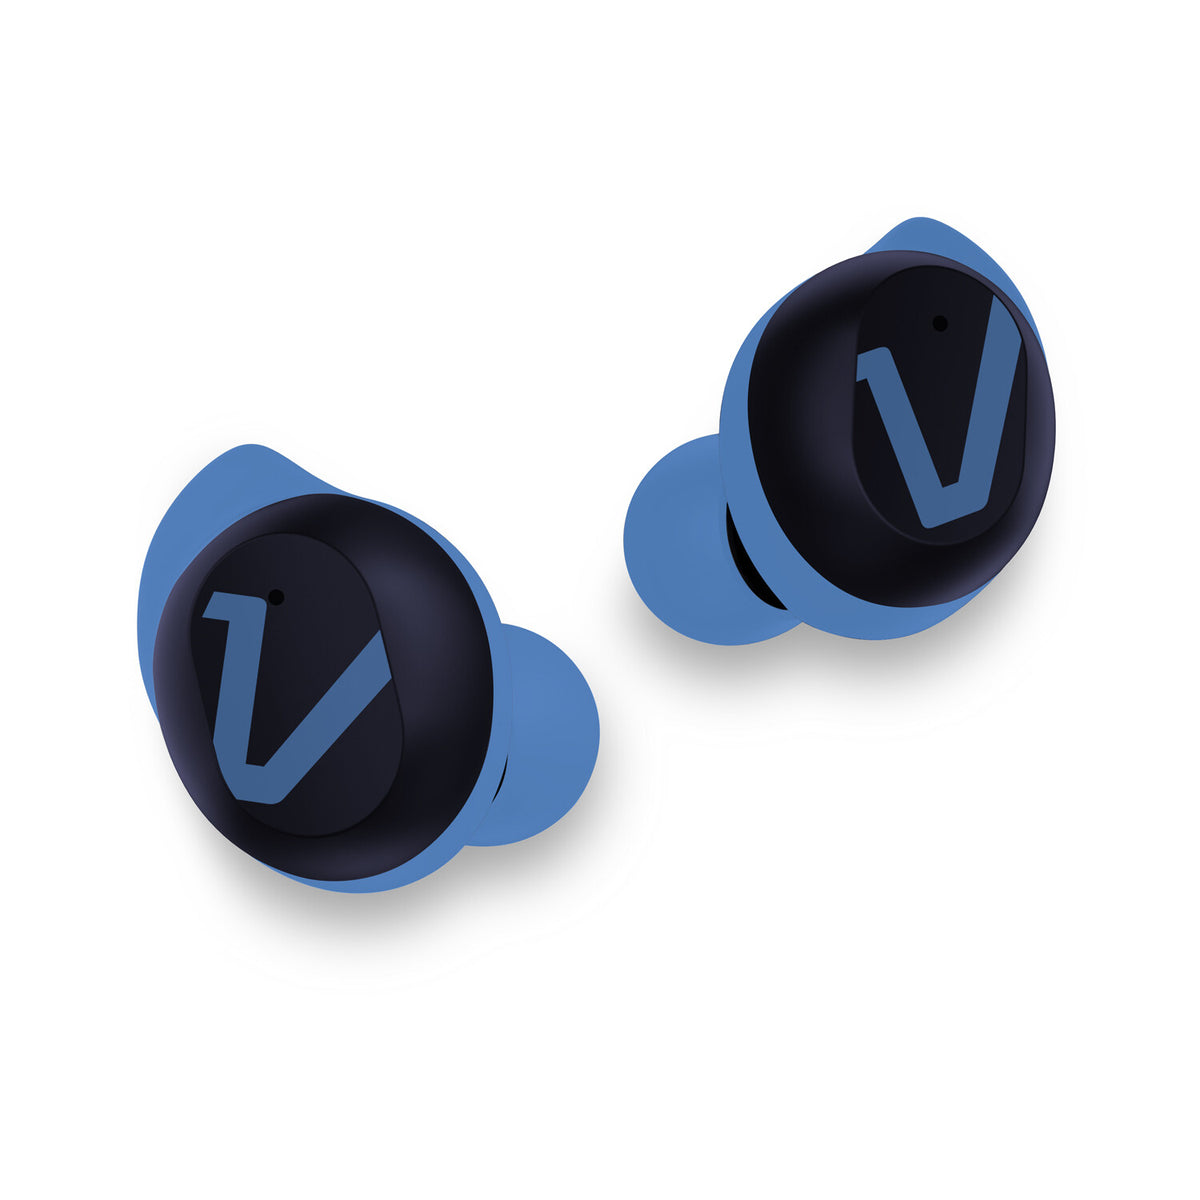 Veho RHOX - True Wireless Stereo (TWS) Bluetooth Earbuds in Electric Blue